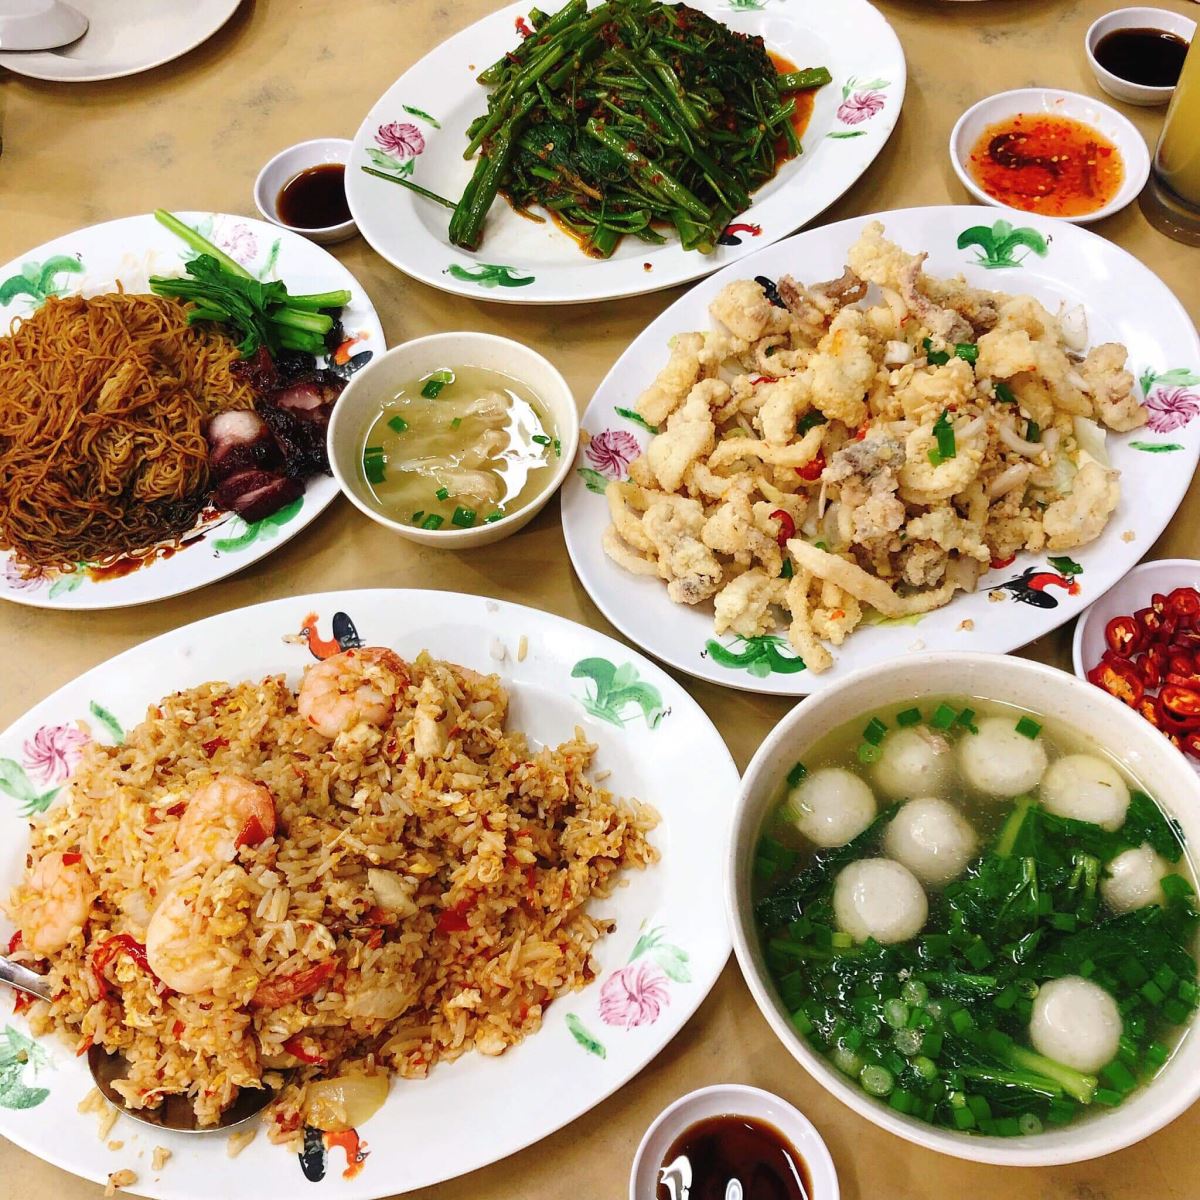 Đồ ăn của Malaysia khá dễ ăn và đa phần phù hợp với khẩu vị người Việt mình, chỉ có điều hơi cay và nhiều dầu mỡ một chút thôi